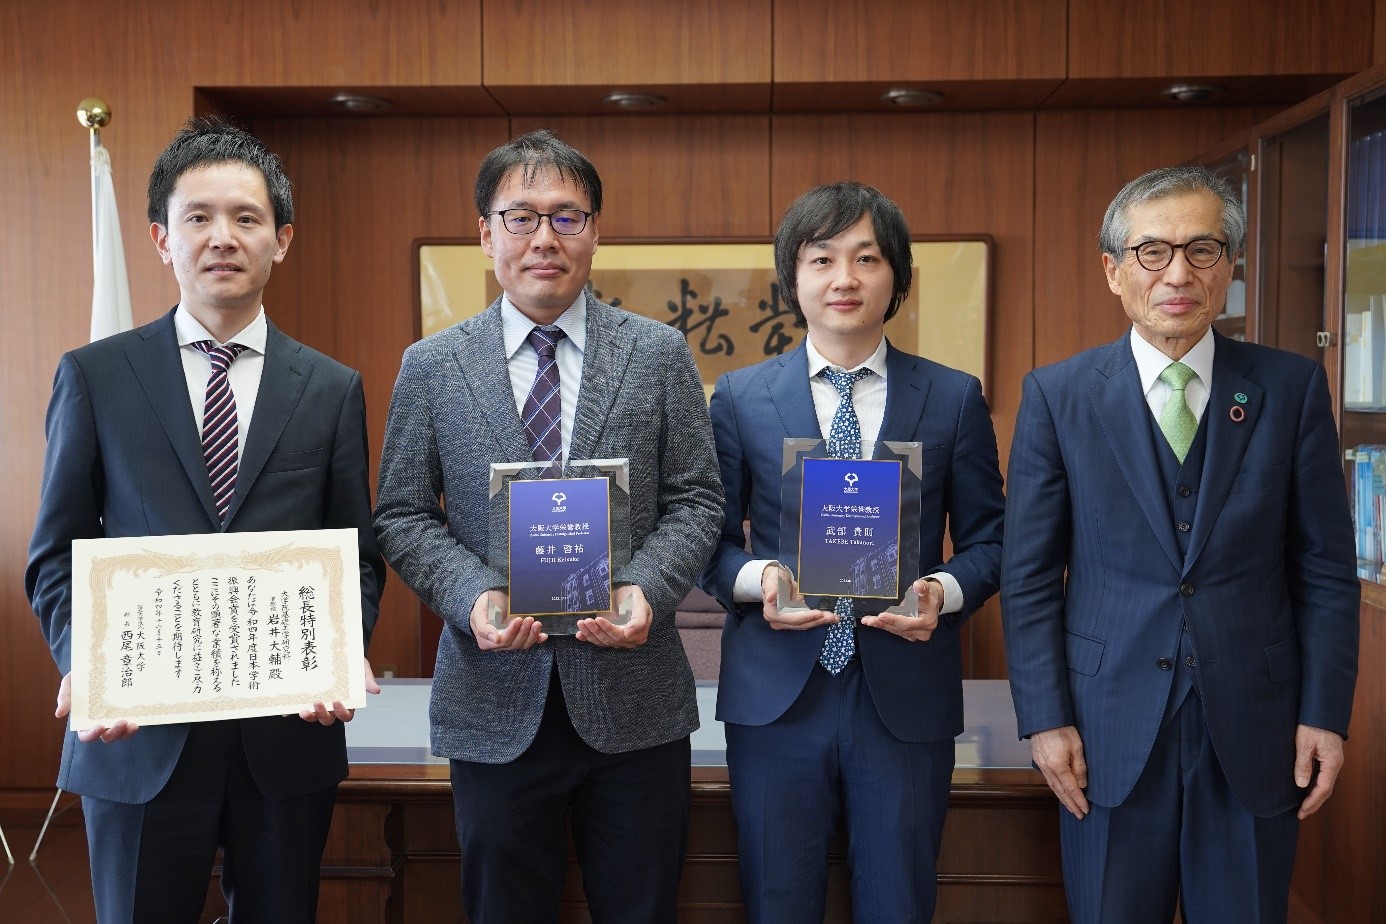 大阪大学栄誉教授の称号付与式、総長特別表彰の表彰式を行いました